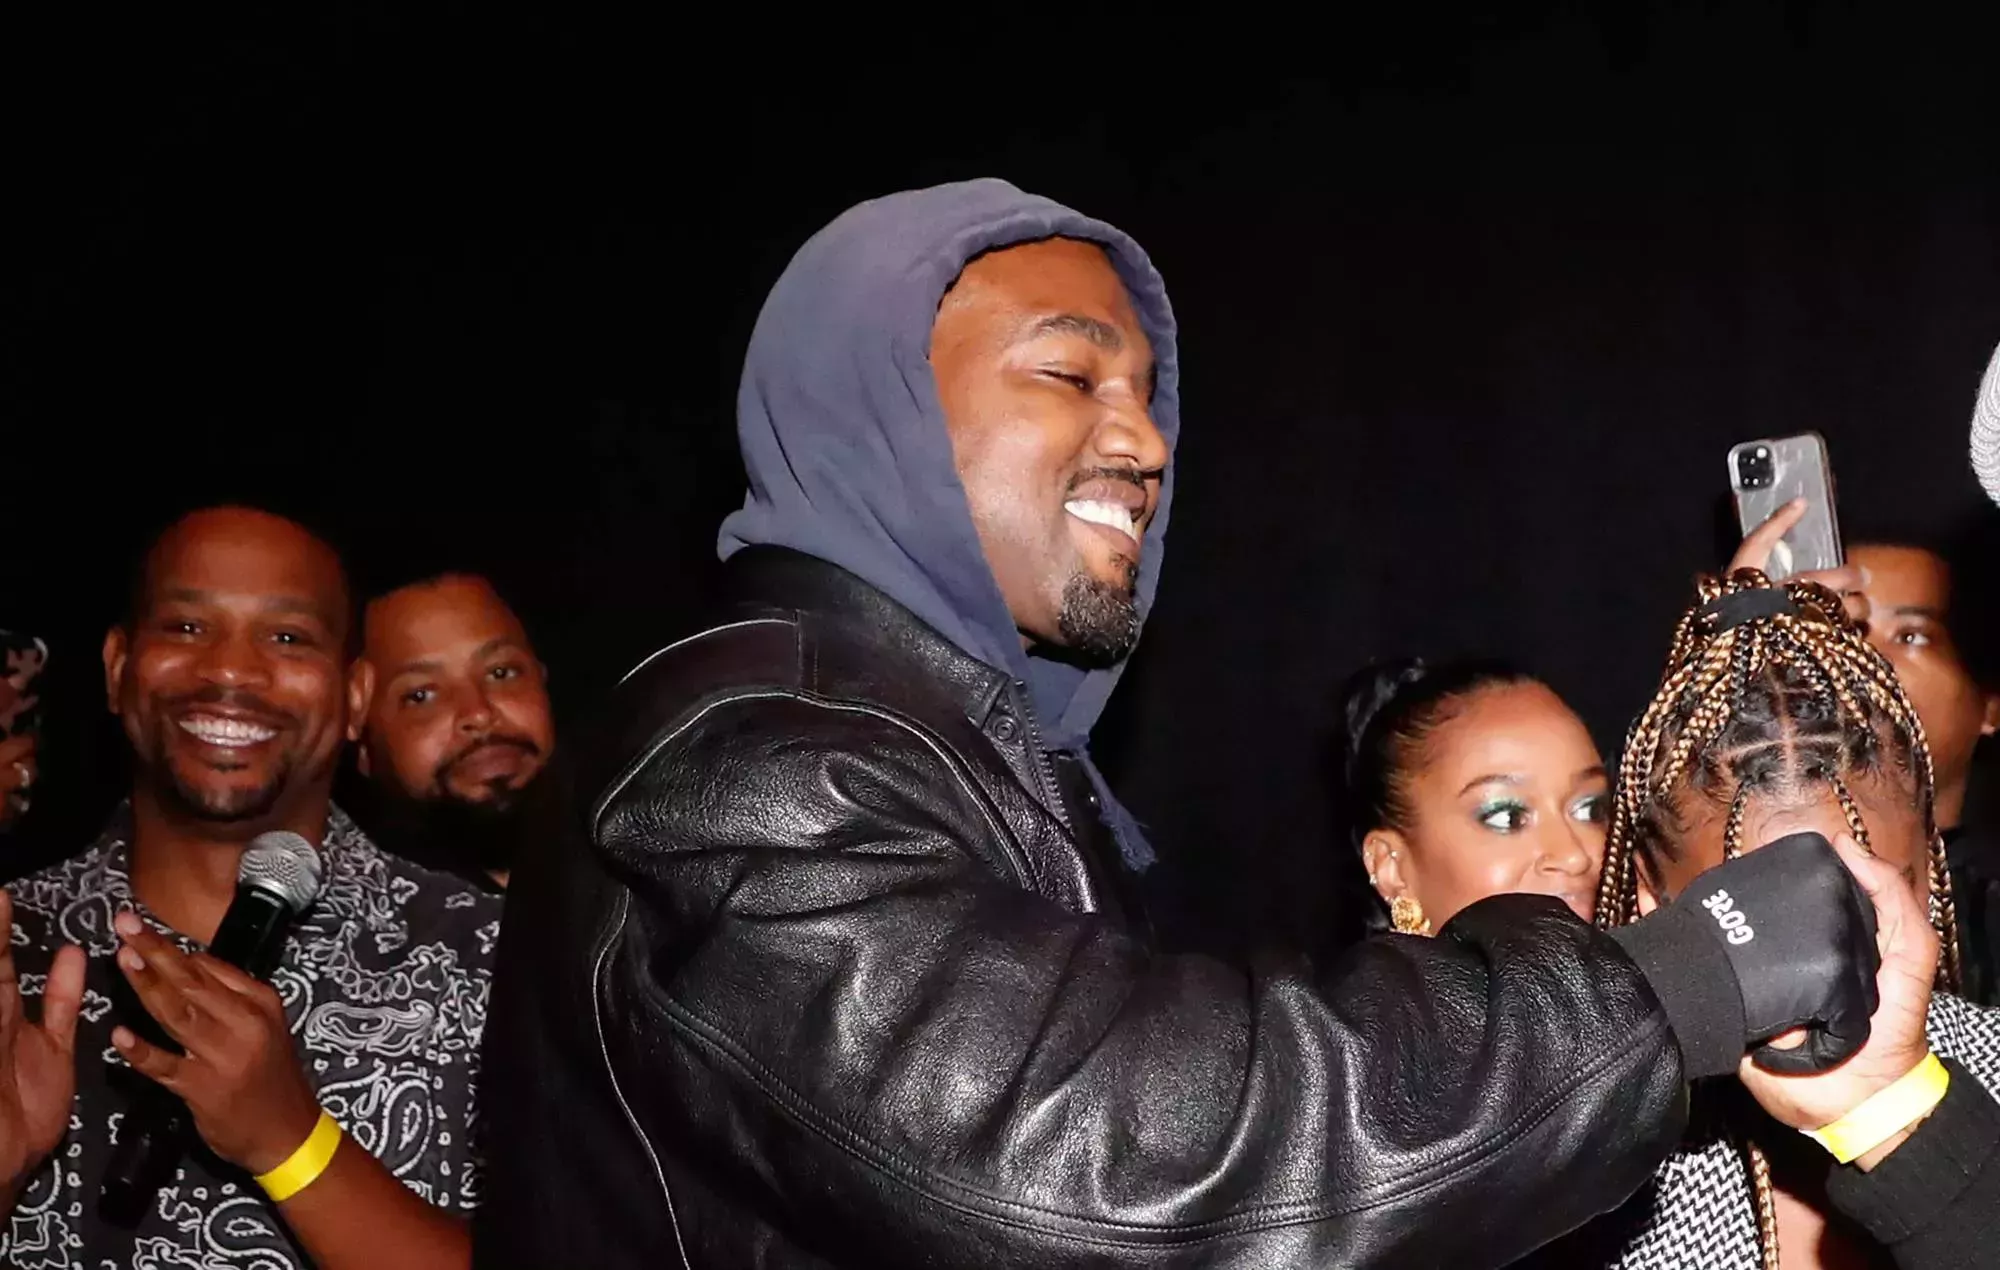 Una organización benéfica para personas sin hogar espera que Kanye West sea 